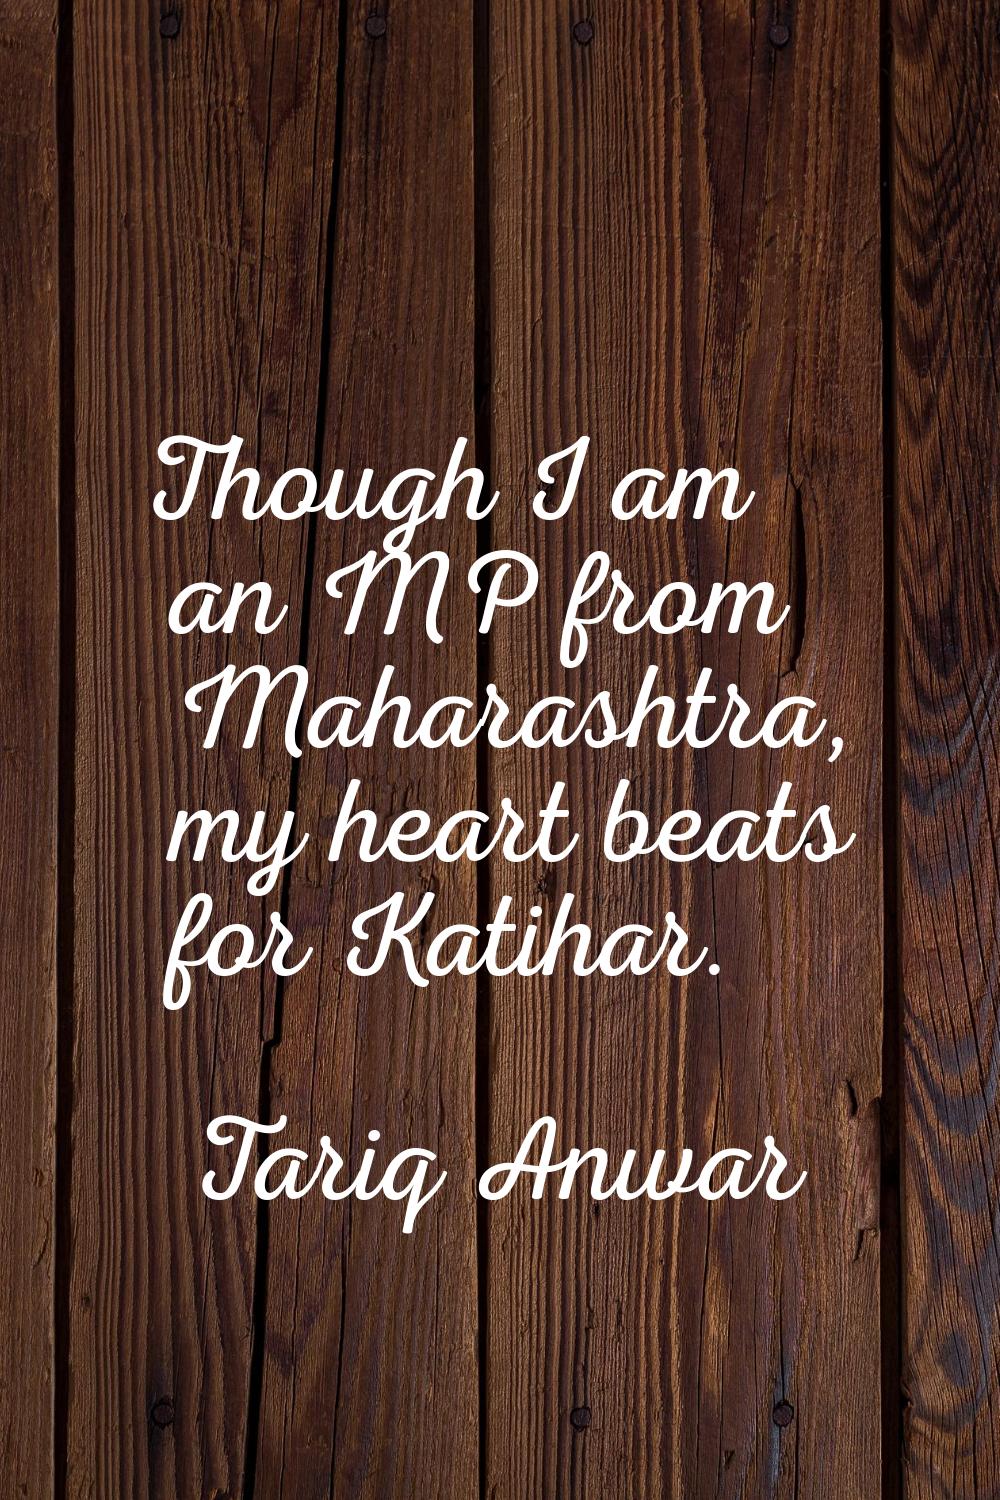 Though I am an MP from Maharashtra, my heart beats for Katihar.